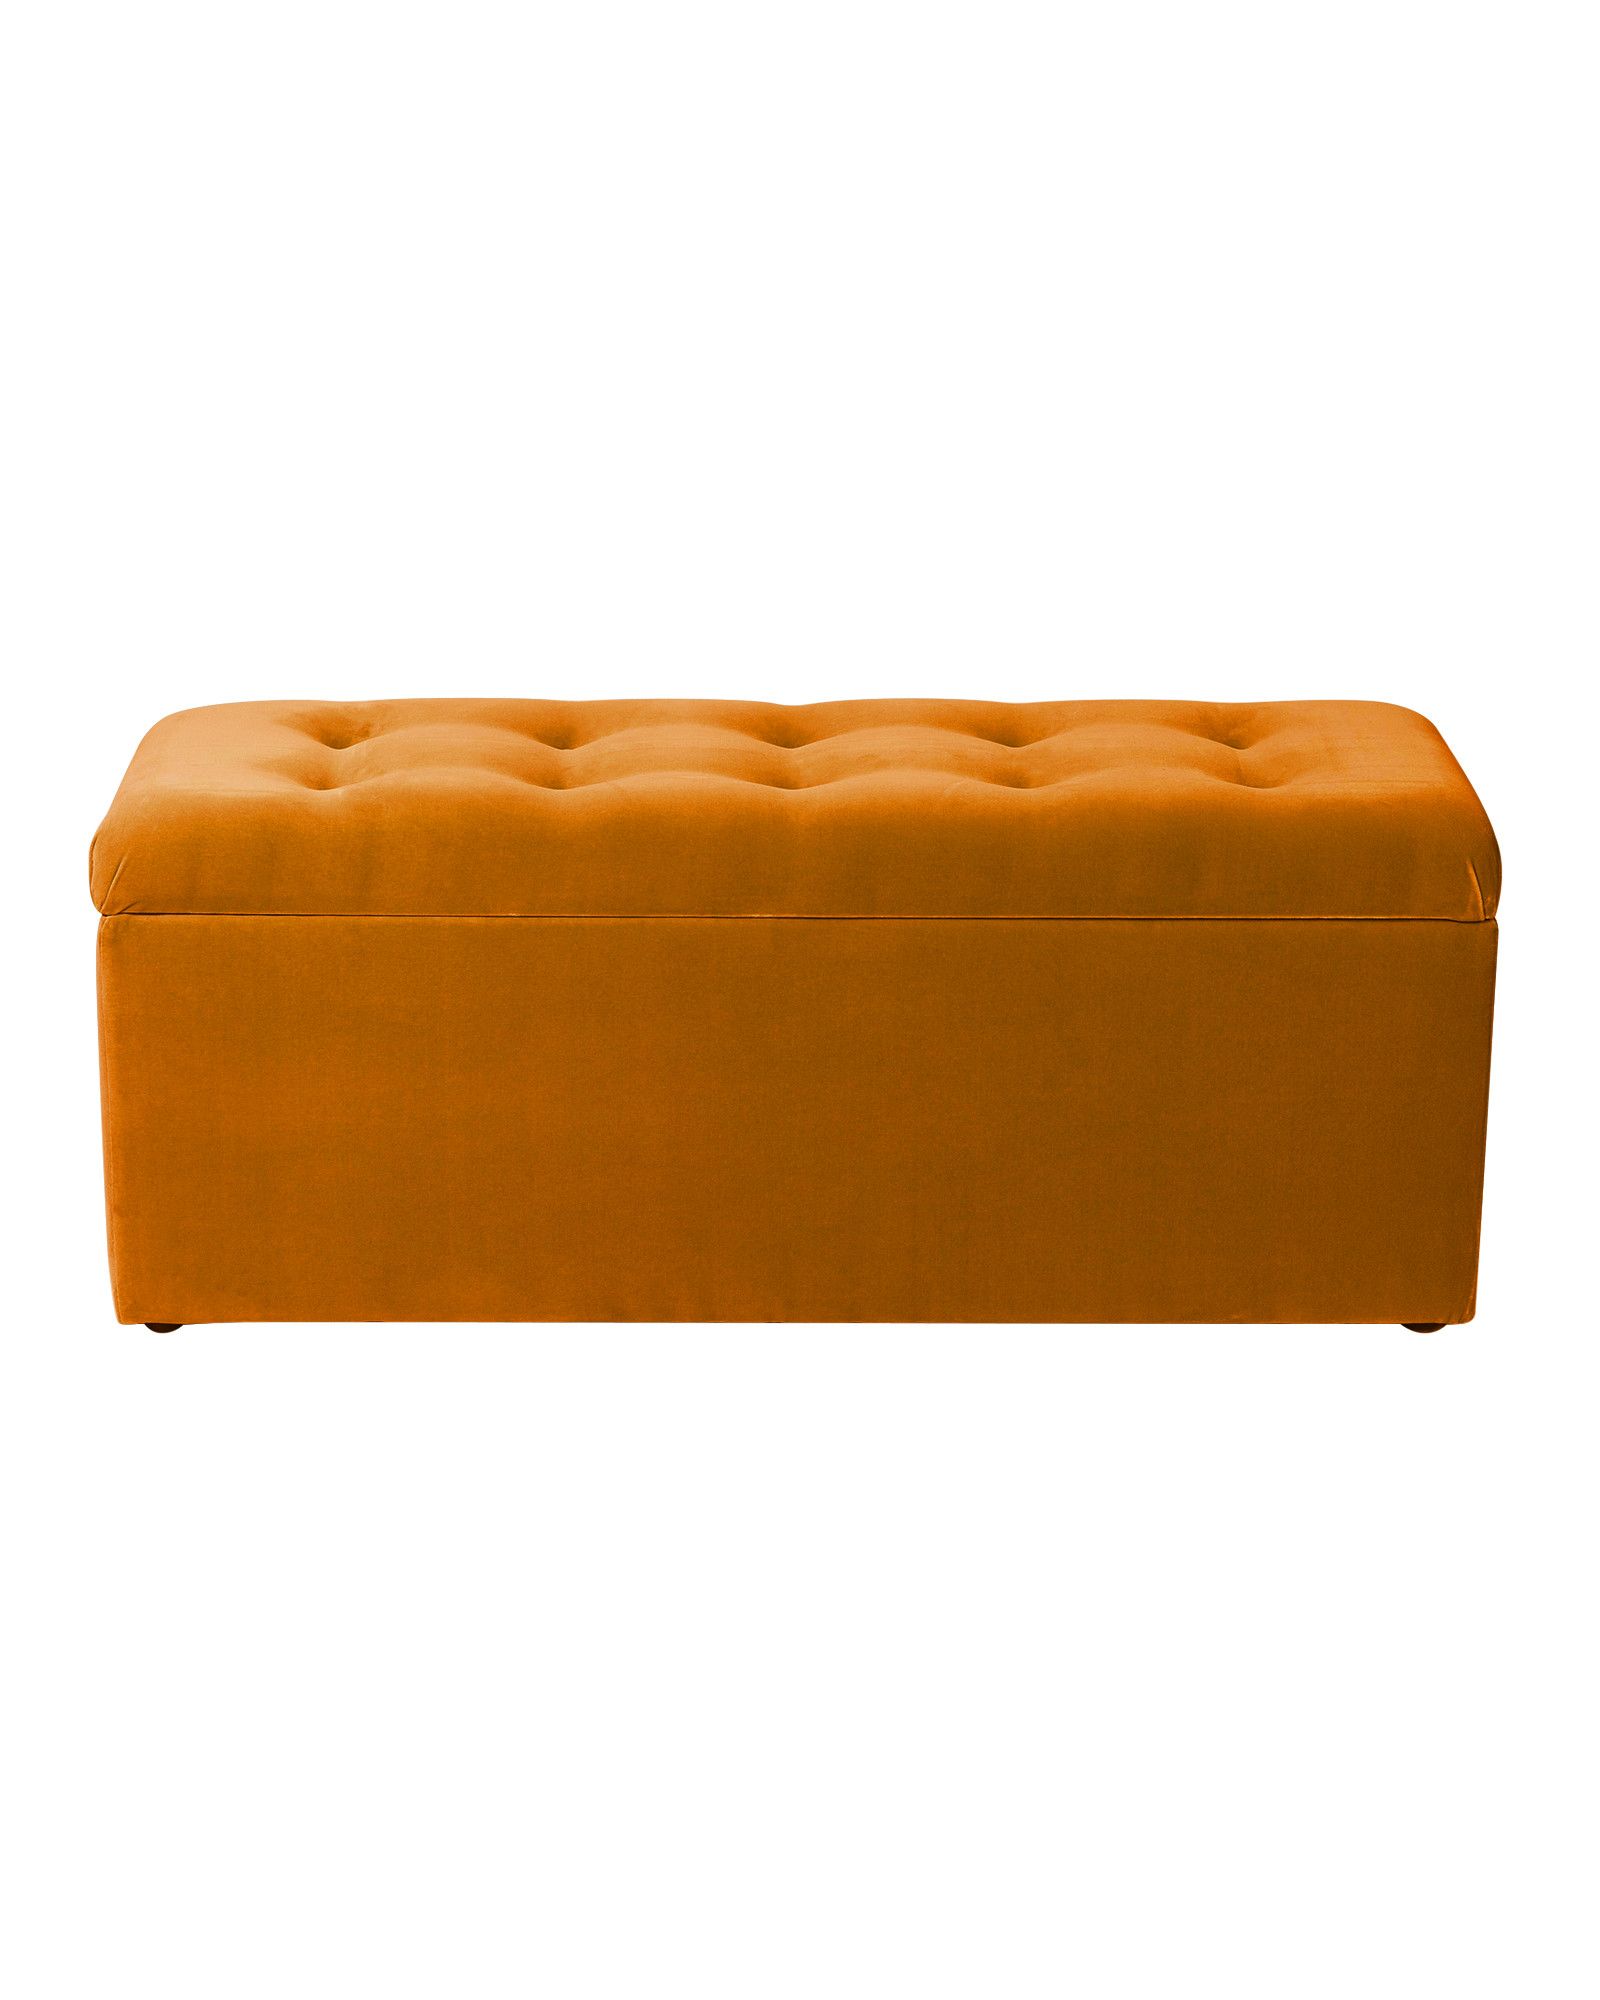 Velvet Saffron Yellow Storage Ottoman, Yellow Leather Ottoman